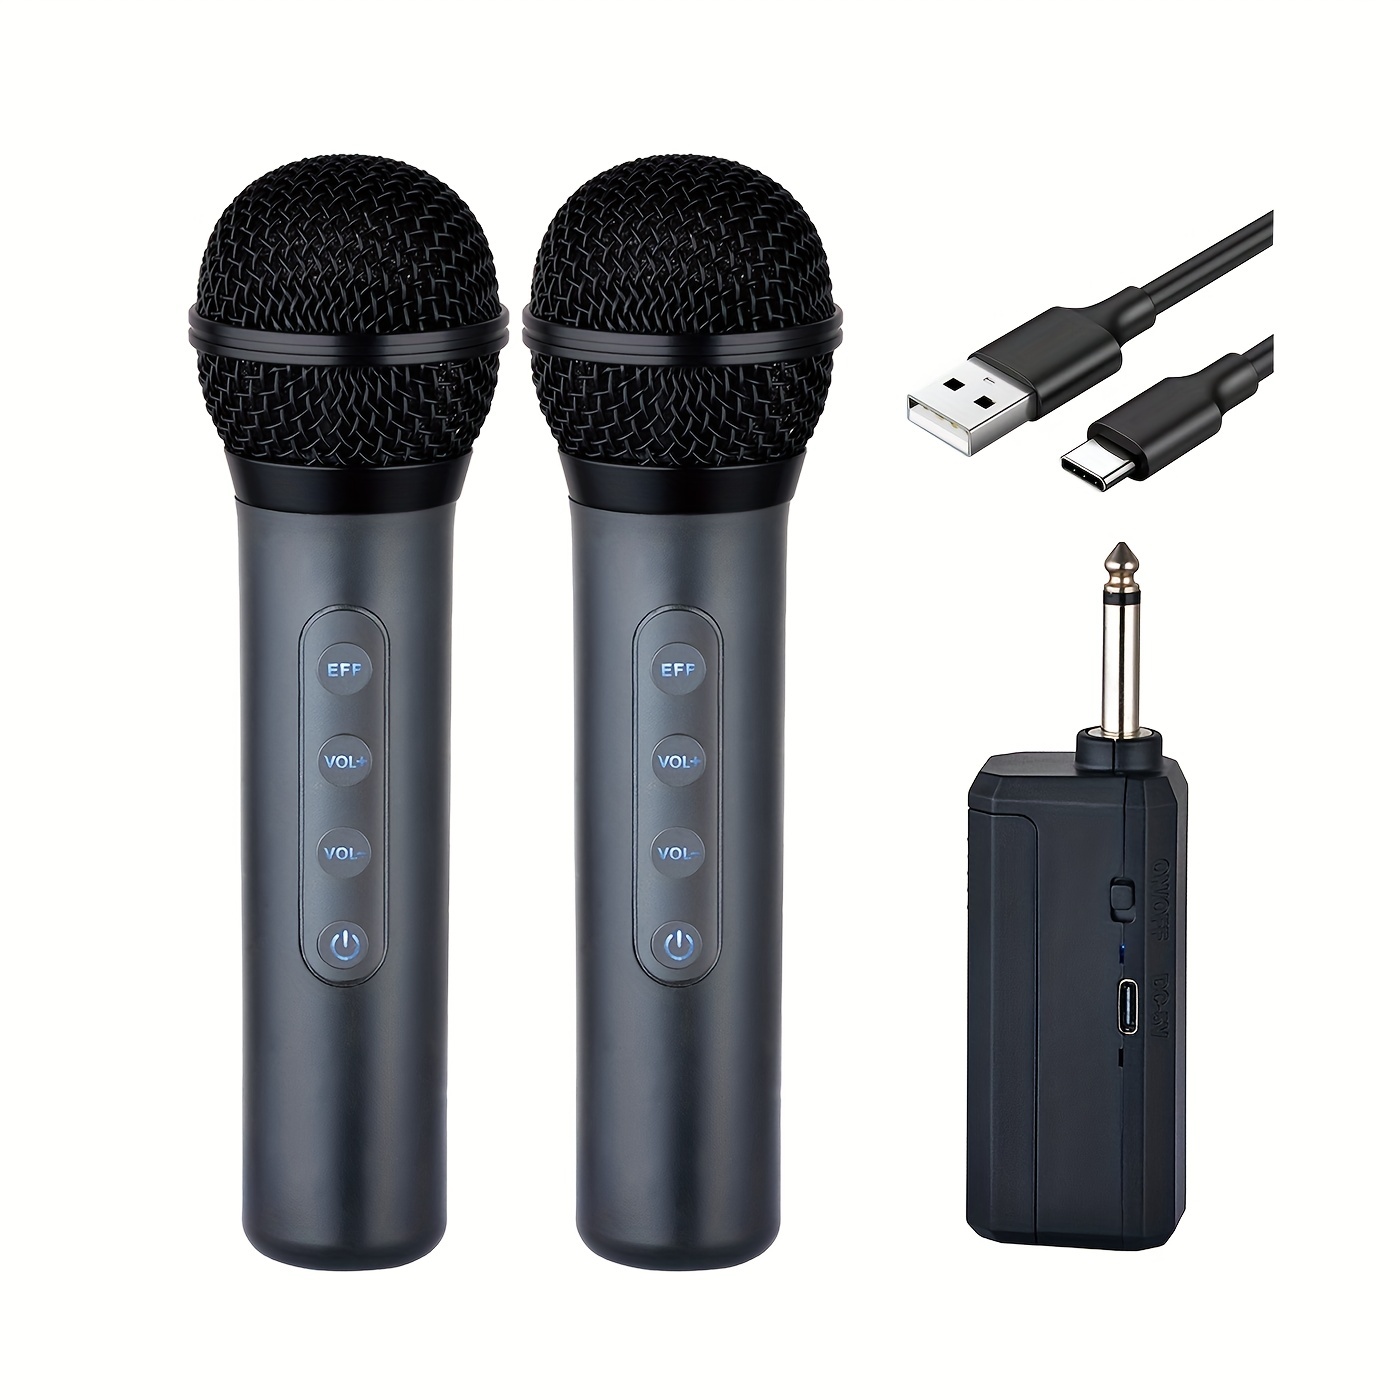 Micrófono inalámbrico Bluetooth K6, micrófono portátil de mano